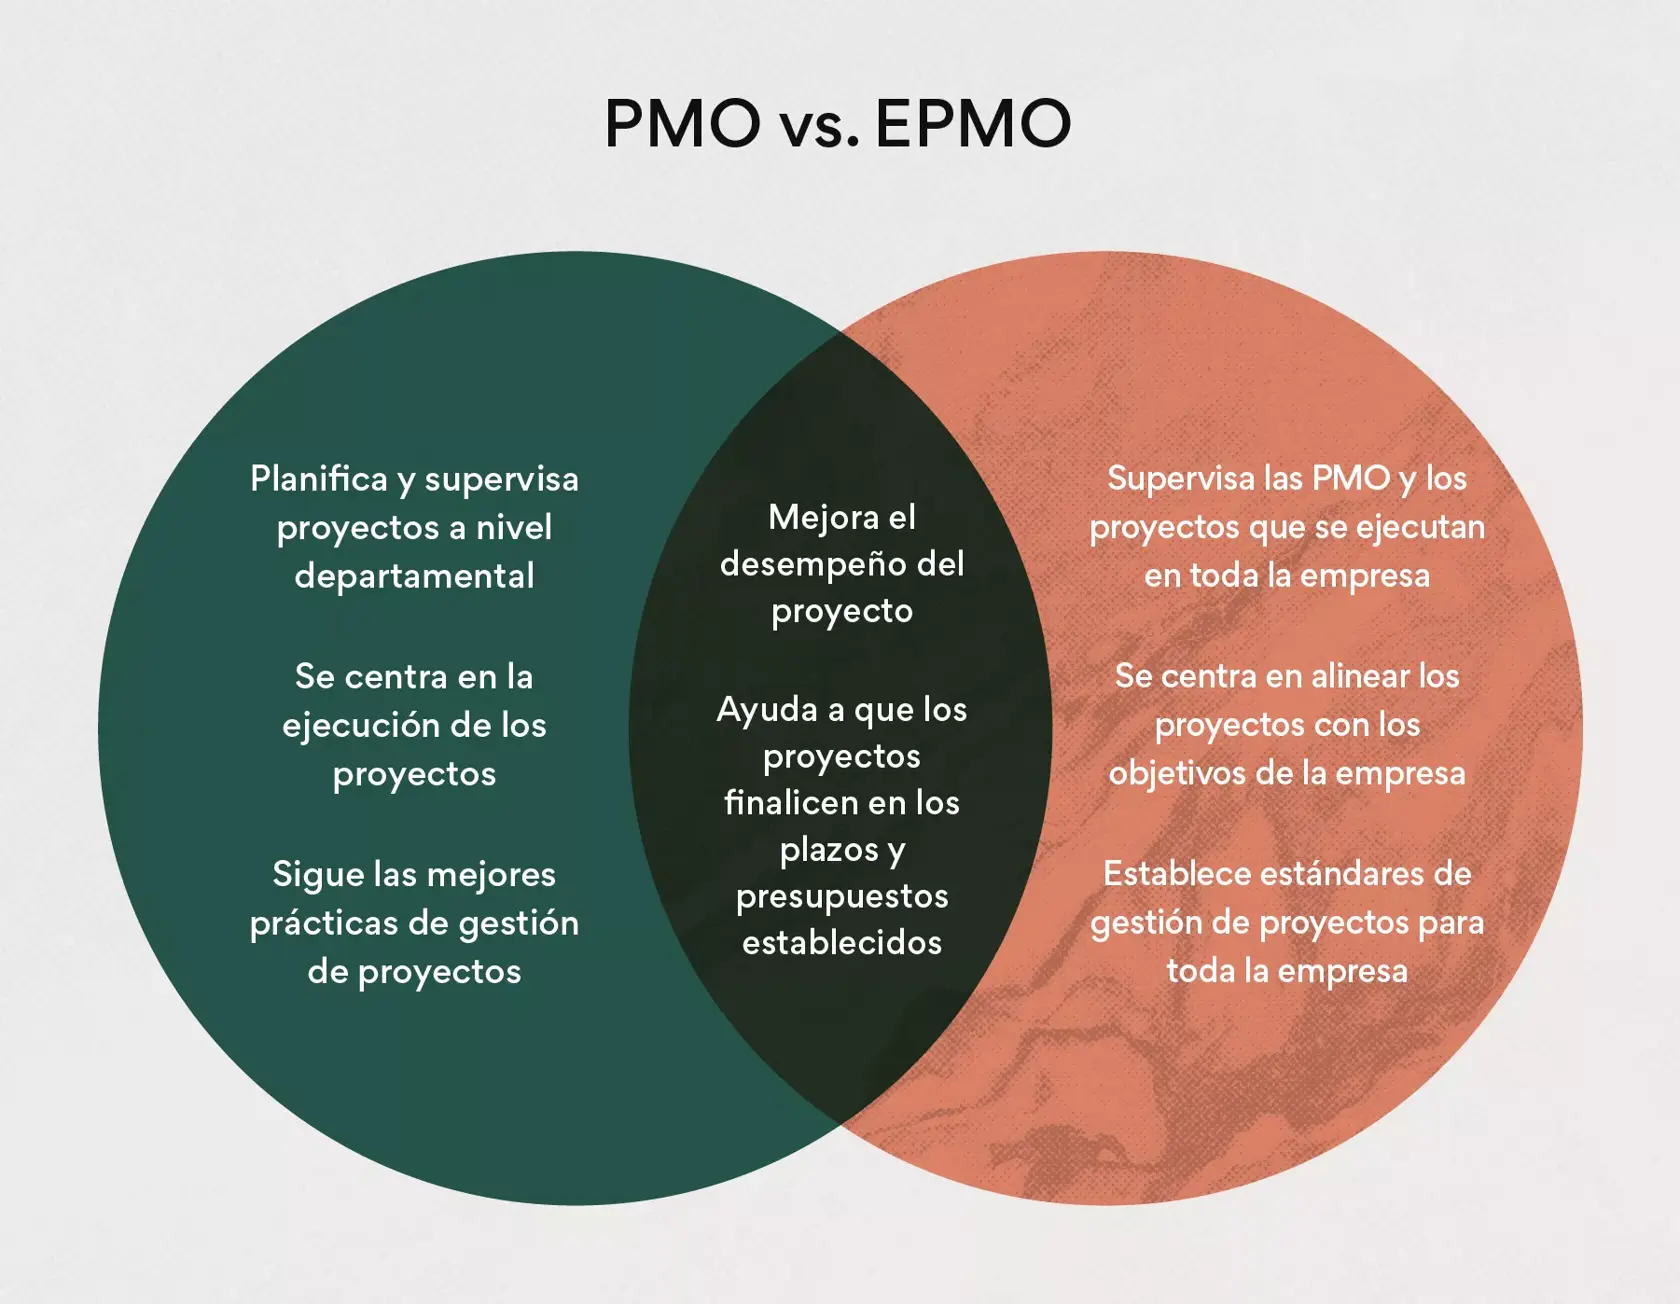 Oficina de Gestión de Proyectos para Empresas (EPMO) vs. Oficina de Gestión de Proyectos (PMO)